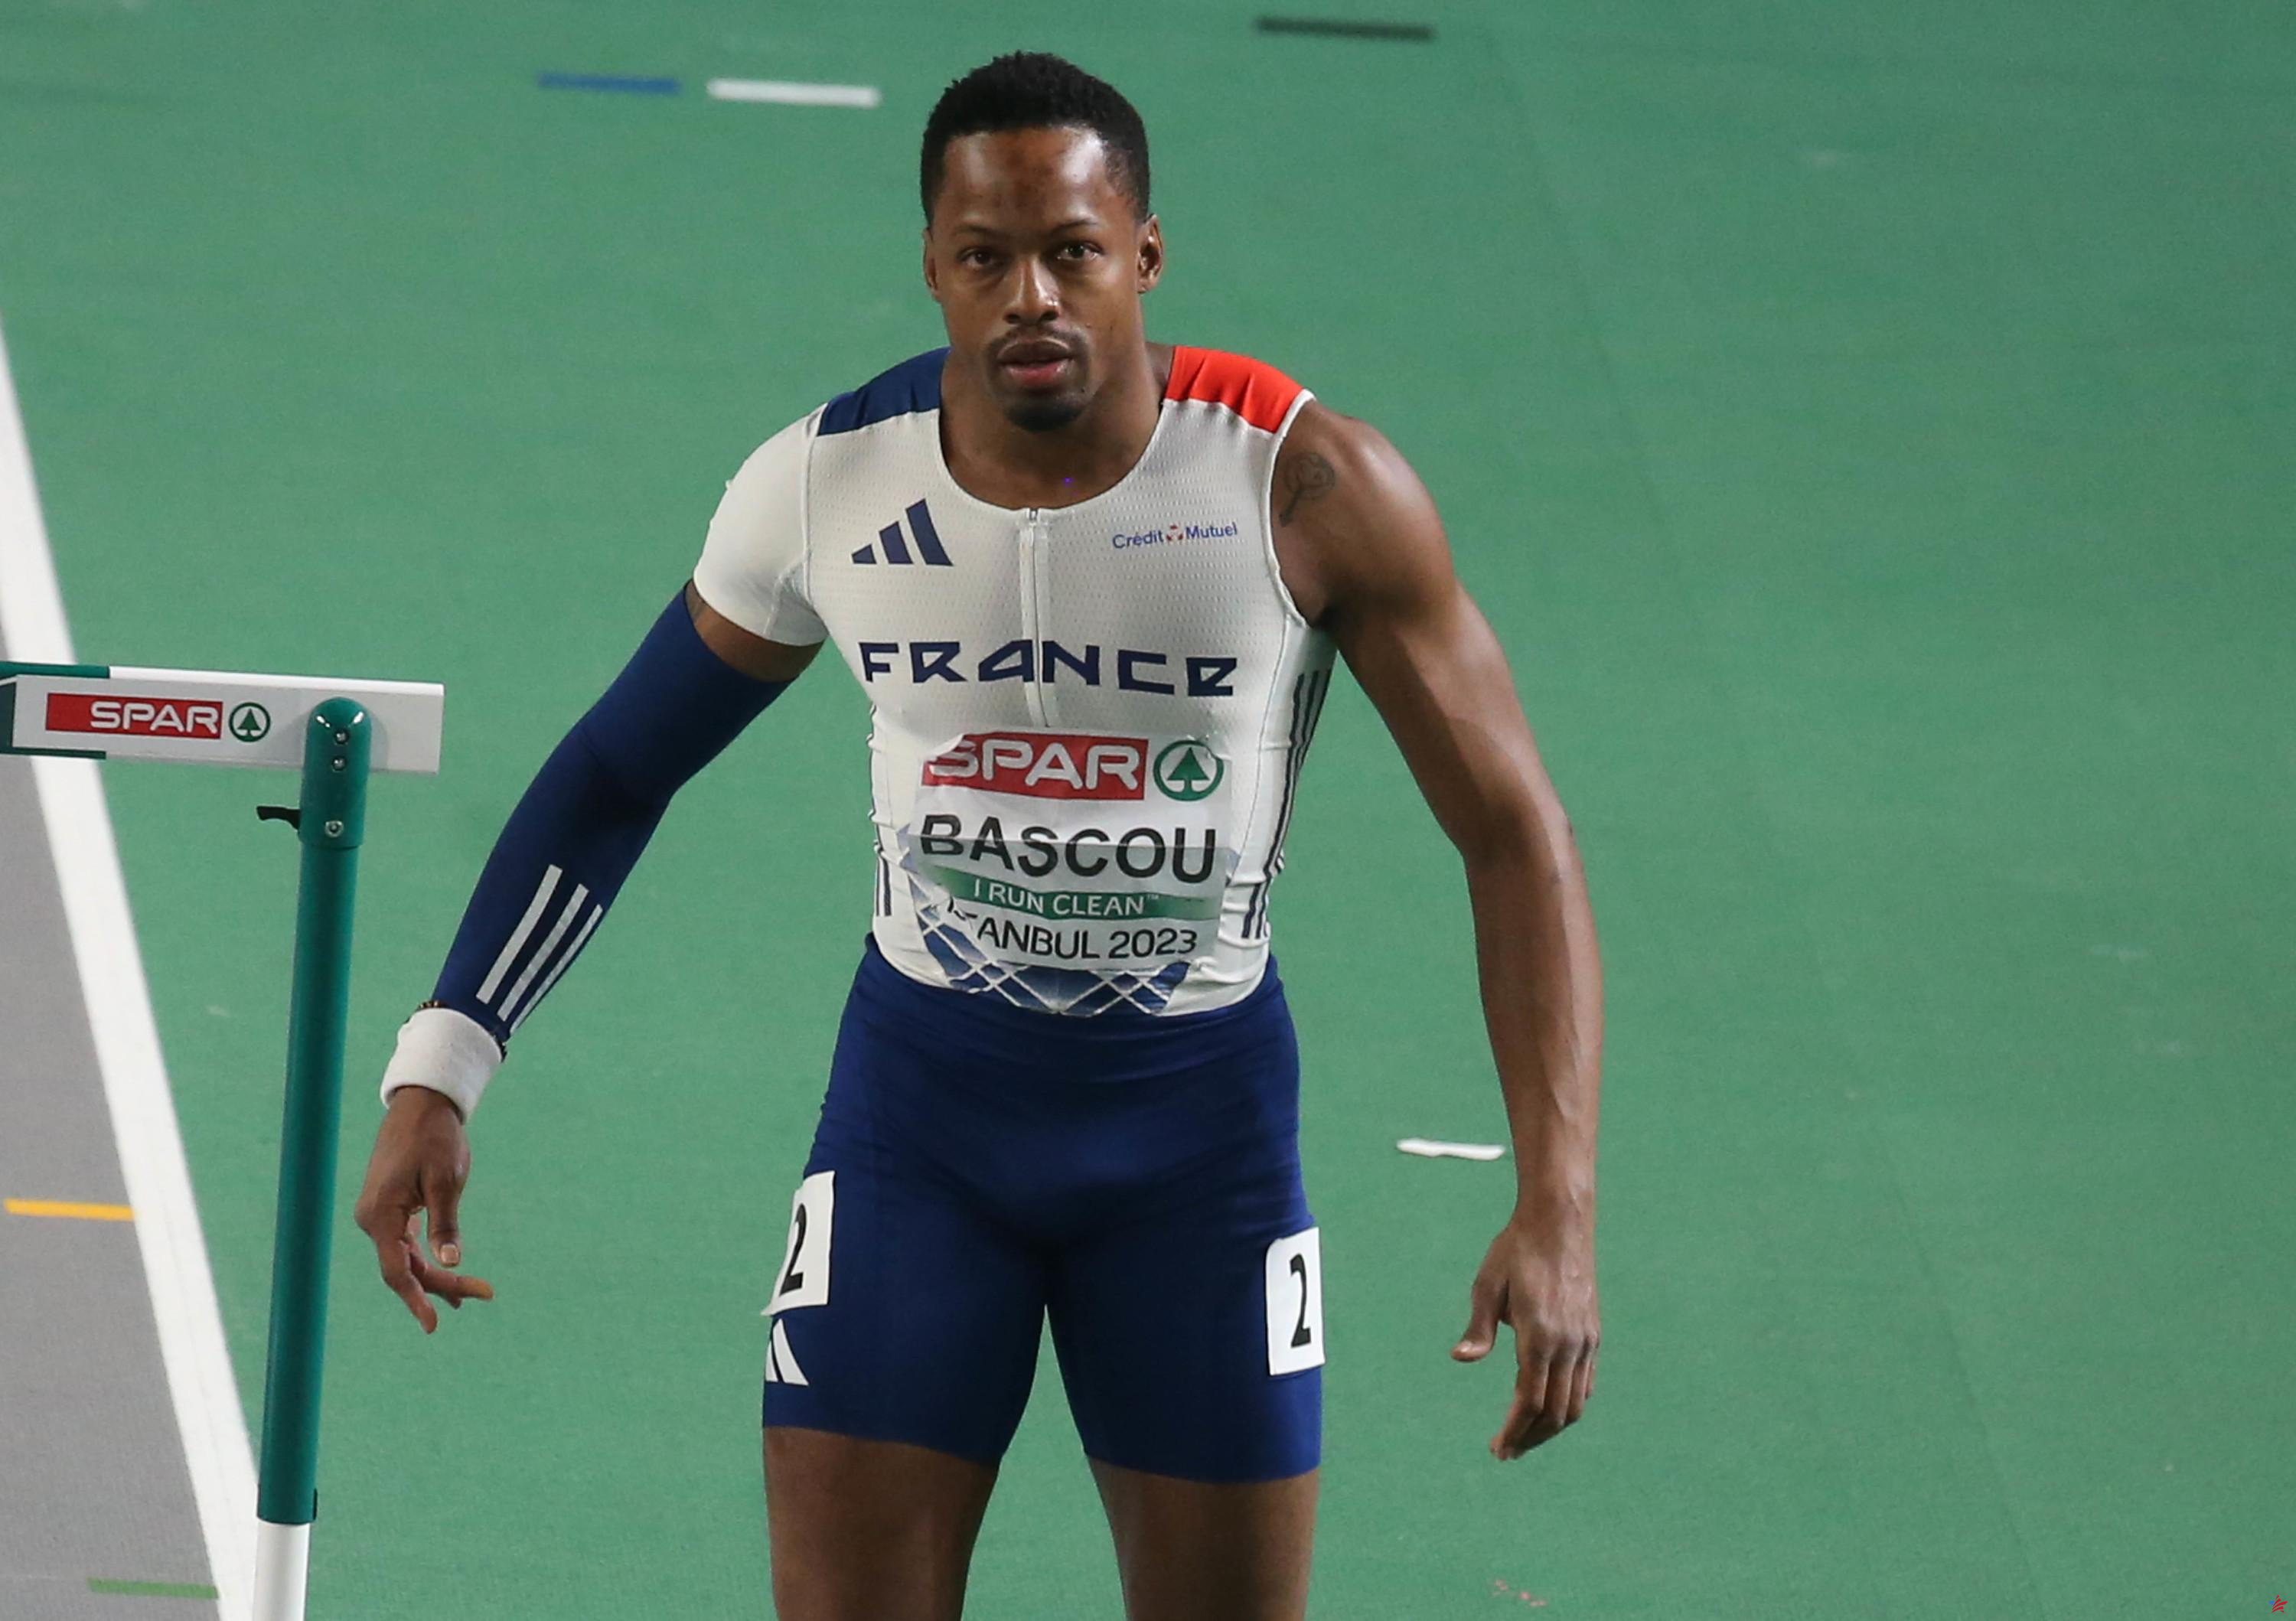 Atletismo: el medallista de bronce olímpico en Río, Dimitri Bascou, dio positivo por esteroides